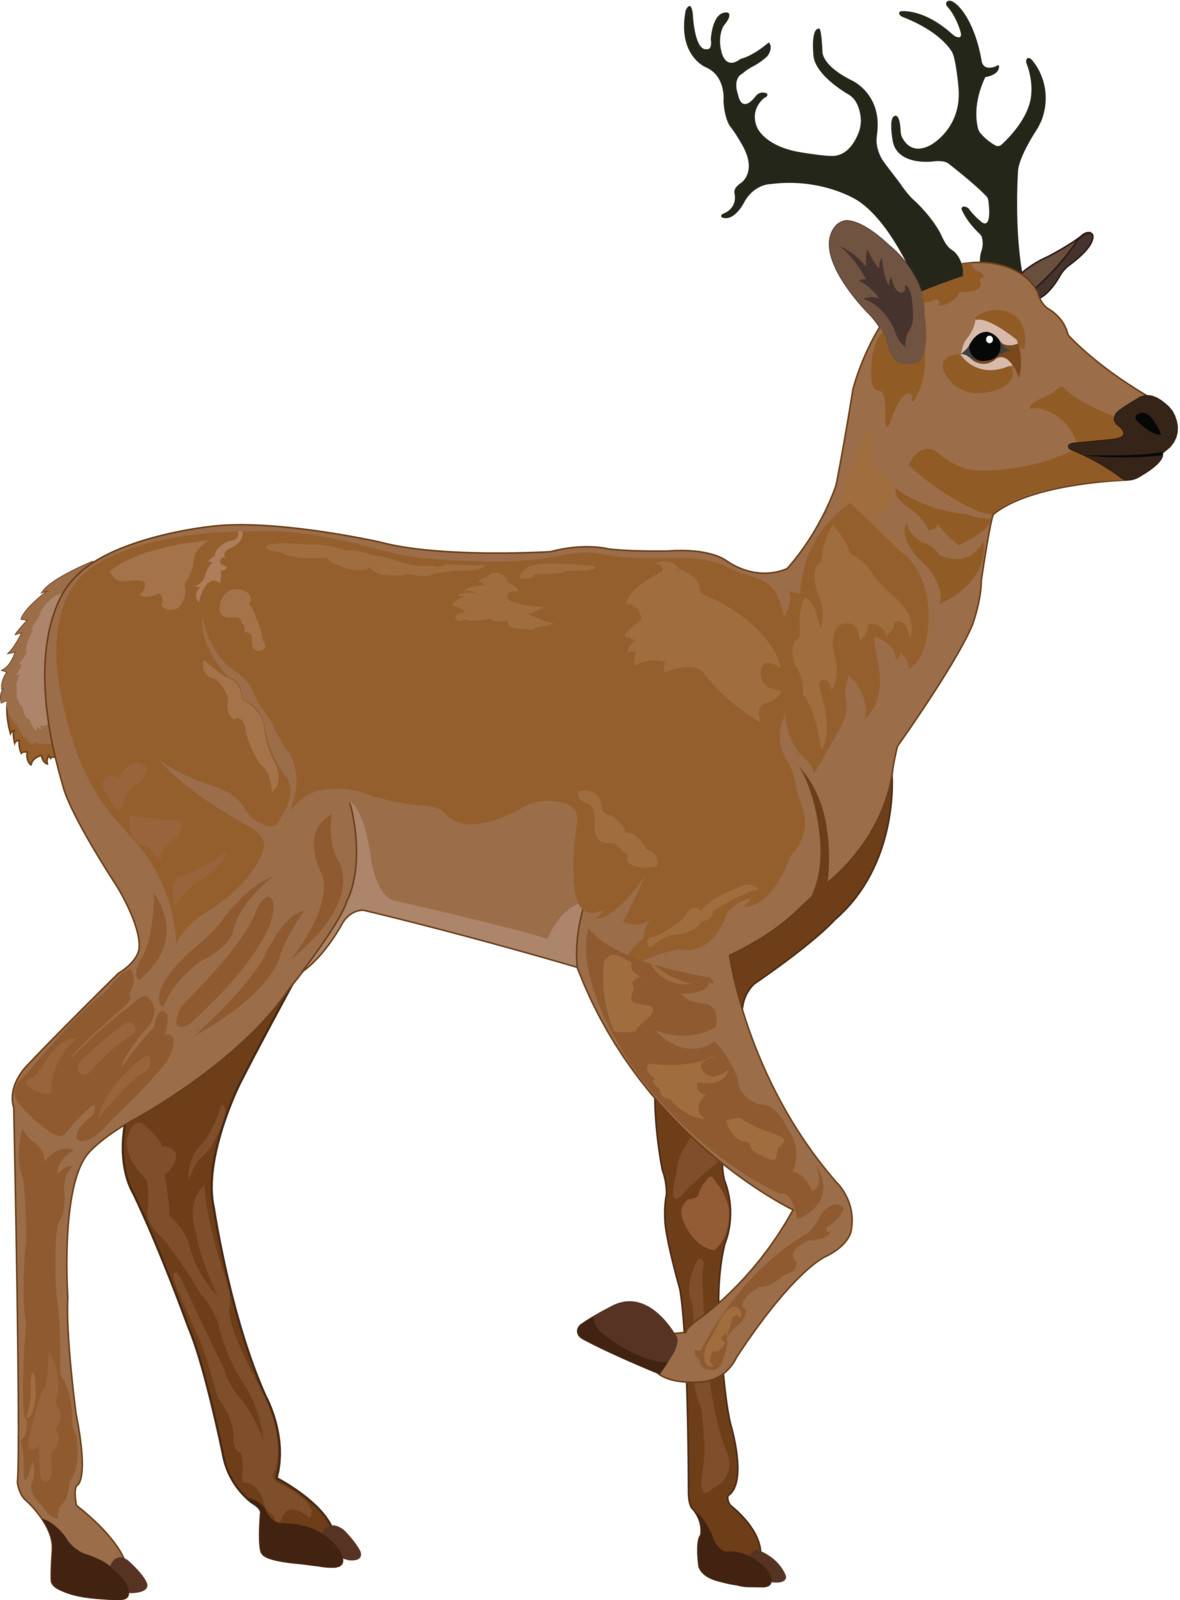 Deer, illustration by Morphart